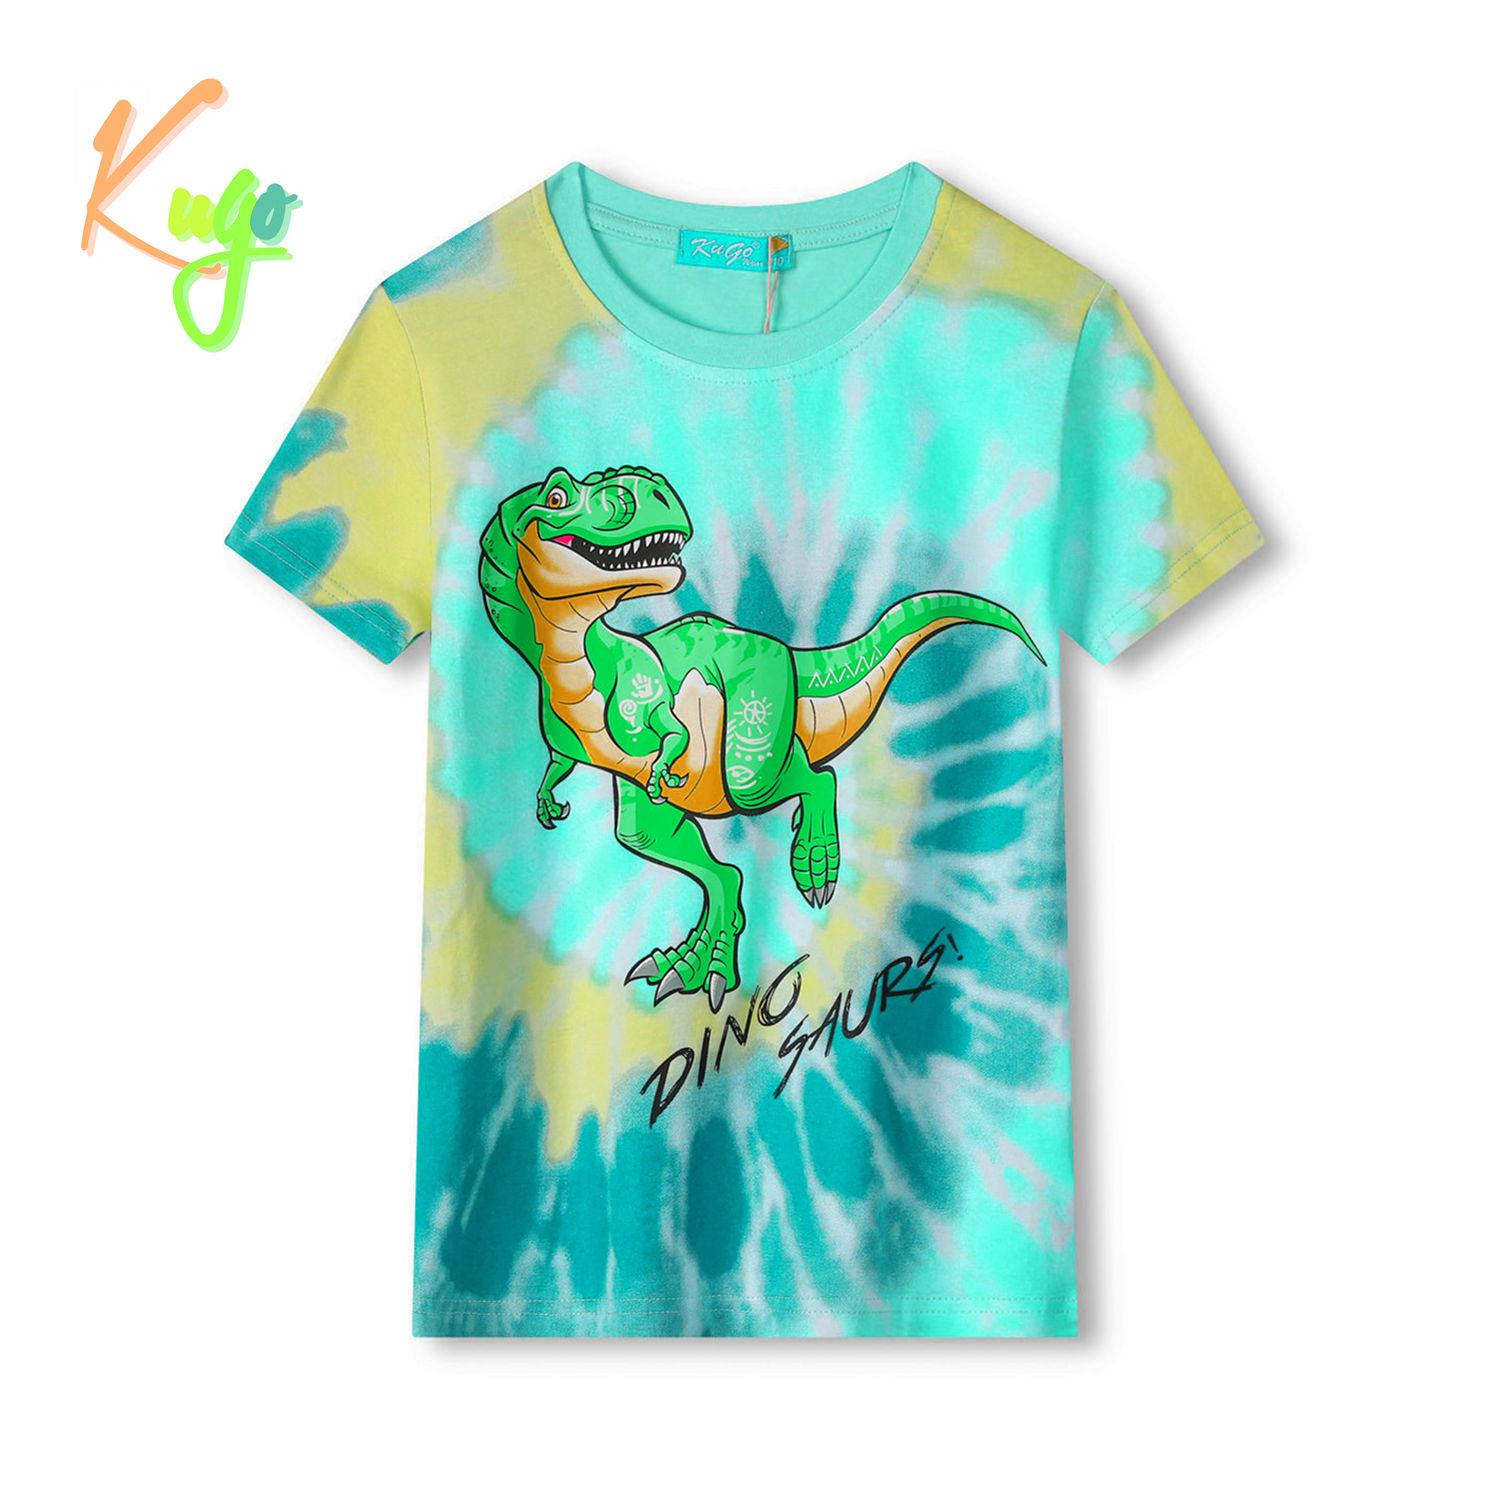 Chlapecké tričko - KUGO FC0301, tyrkysová / oranžový dinosaurus Barva: Tyrkysová, Velikost: 116